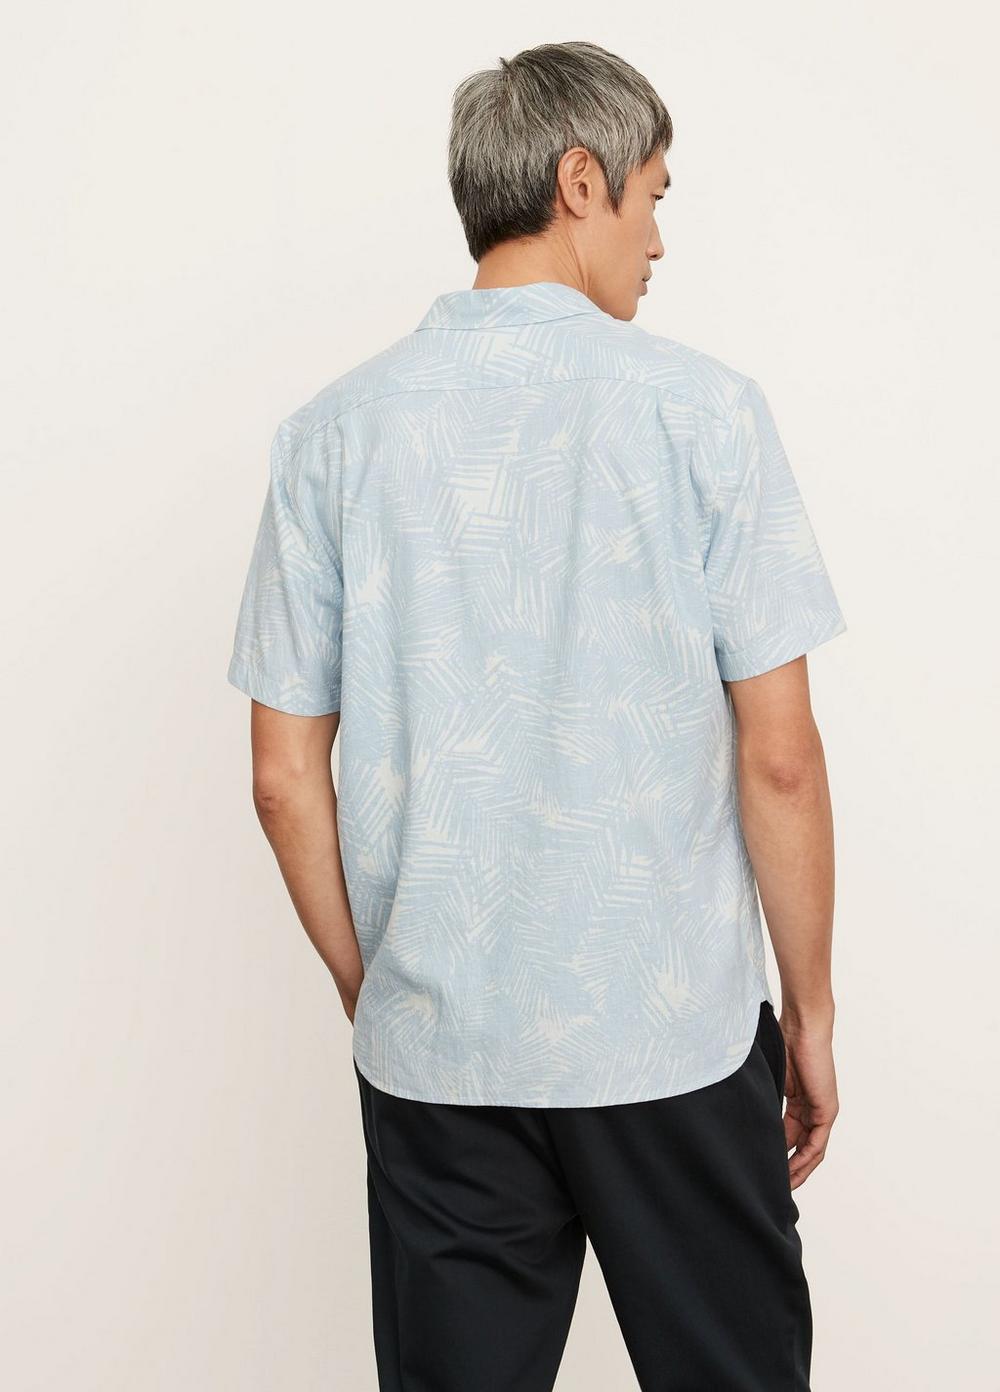 Palm Print Short Sleeve Shirt